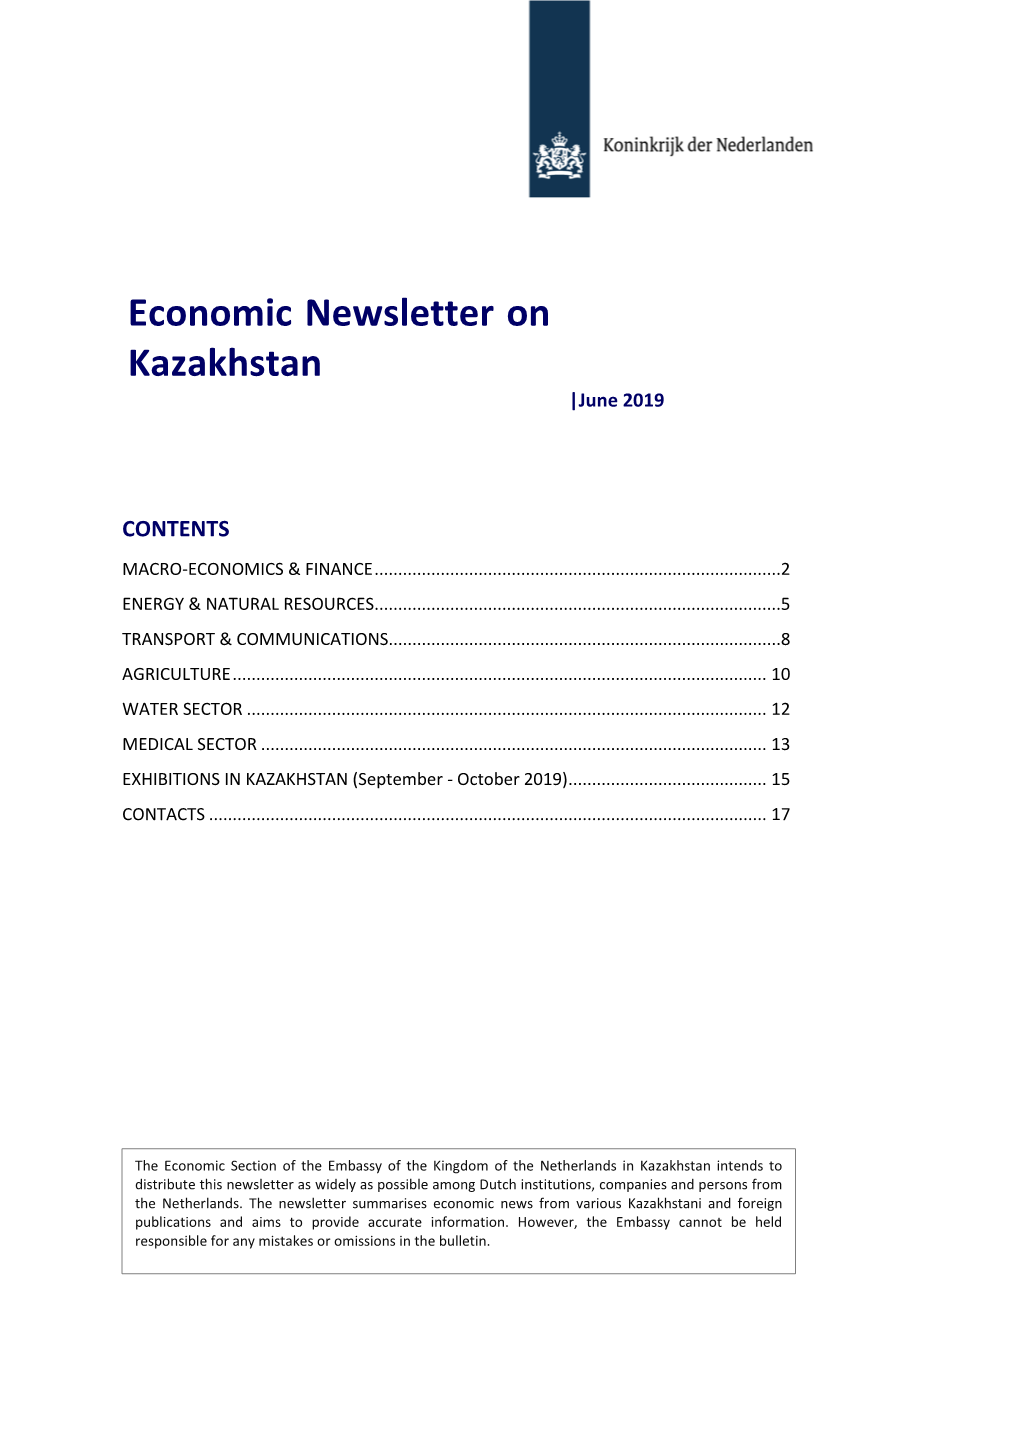 Economic Newsletter on Kazakhstan |June 2019